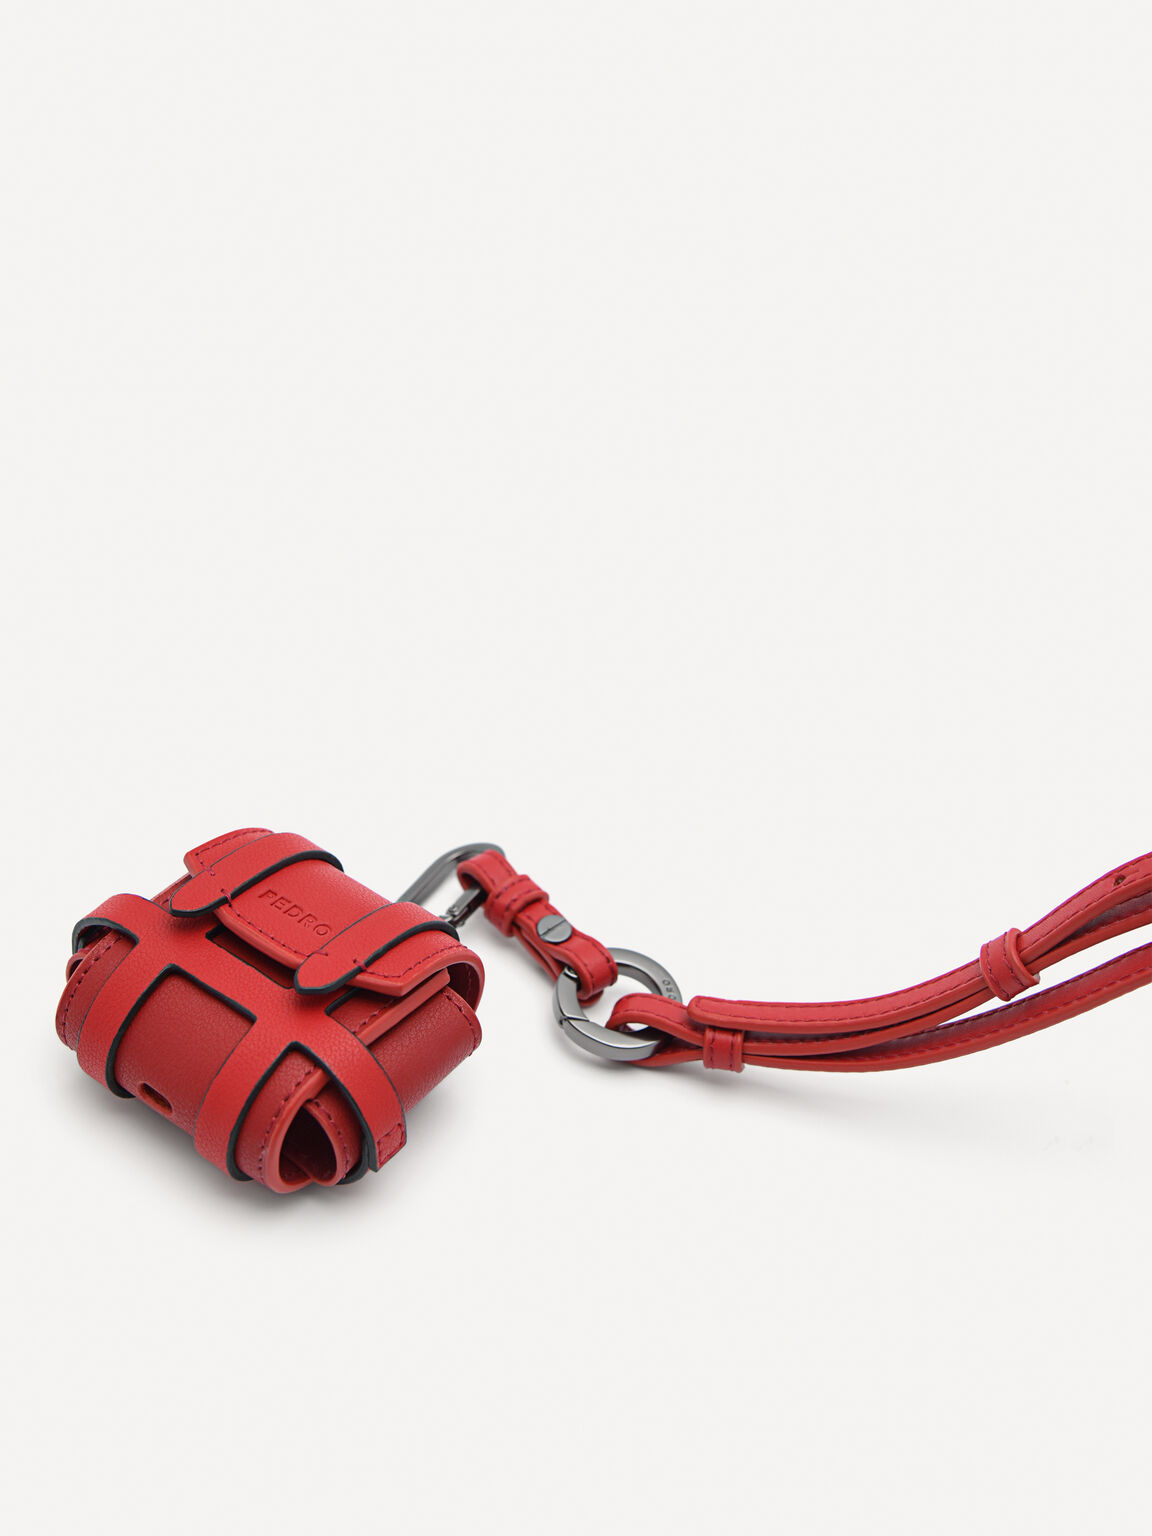 皮革AirPods Pro保護套帶鑰匙扣, 红色